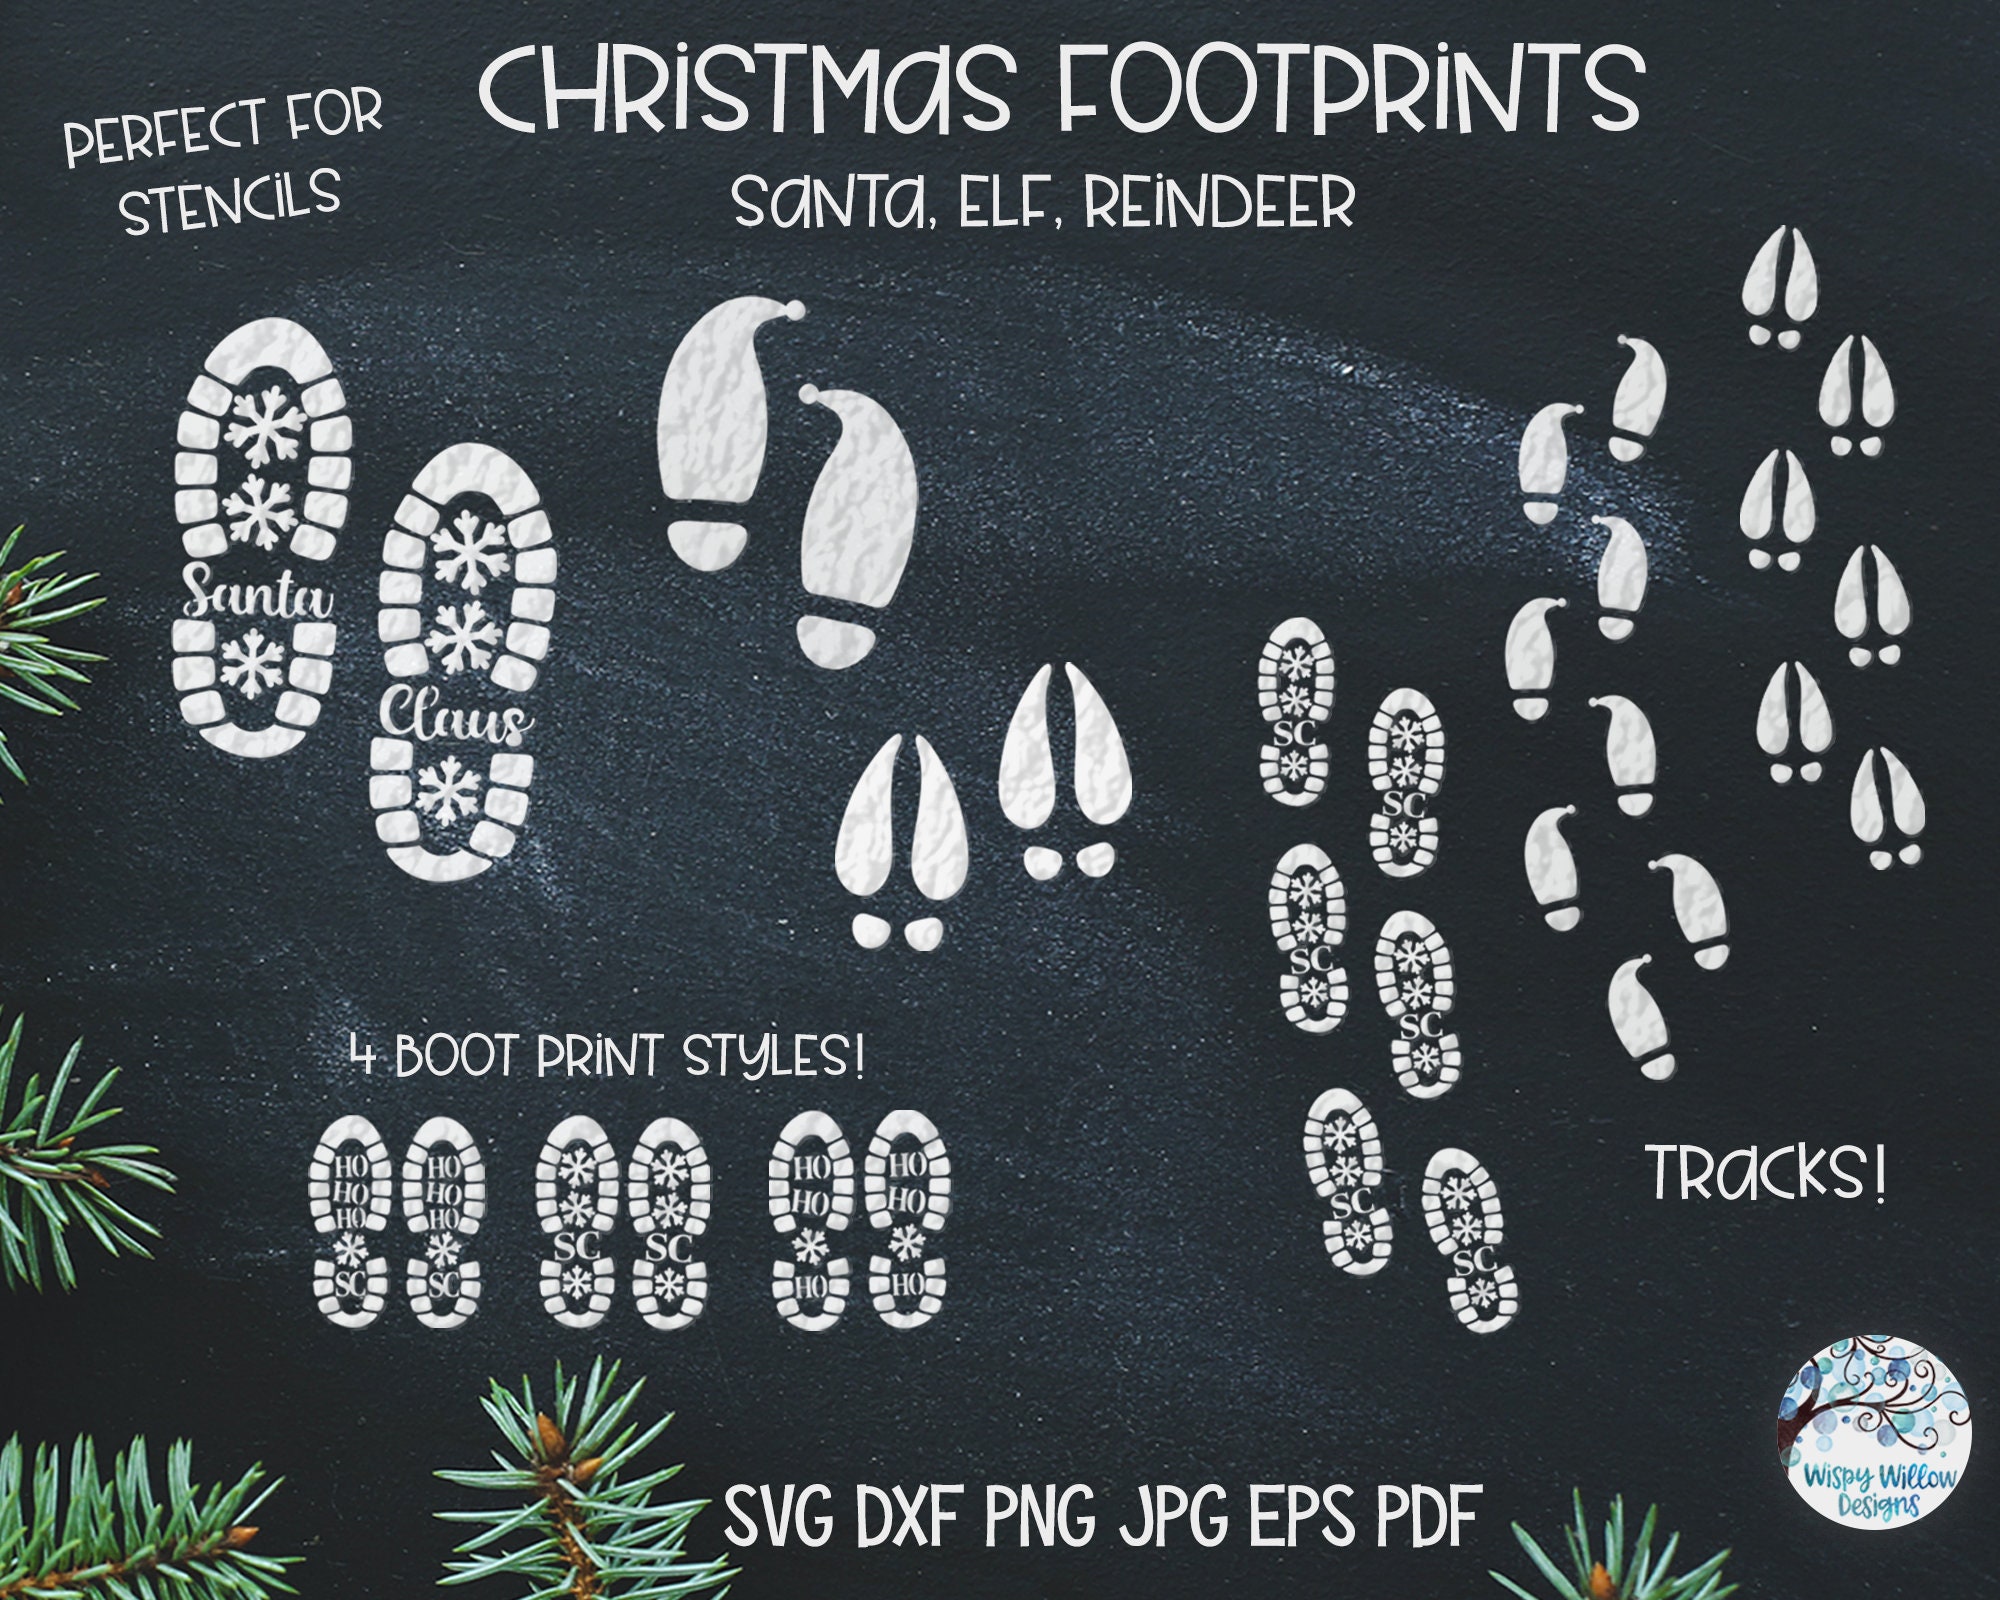 Handmade Supplies :: Digital Files & Templates :: SVG & Image Files :: Santa  Track SVG, Reindeer Track Svg, Santa Boot Print SVg, Santa Boots Svg, Santa  Shoe Prints Svg, Christmas SVG